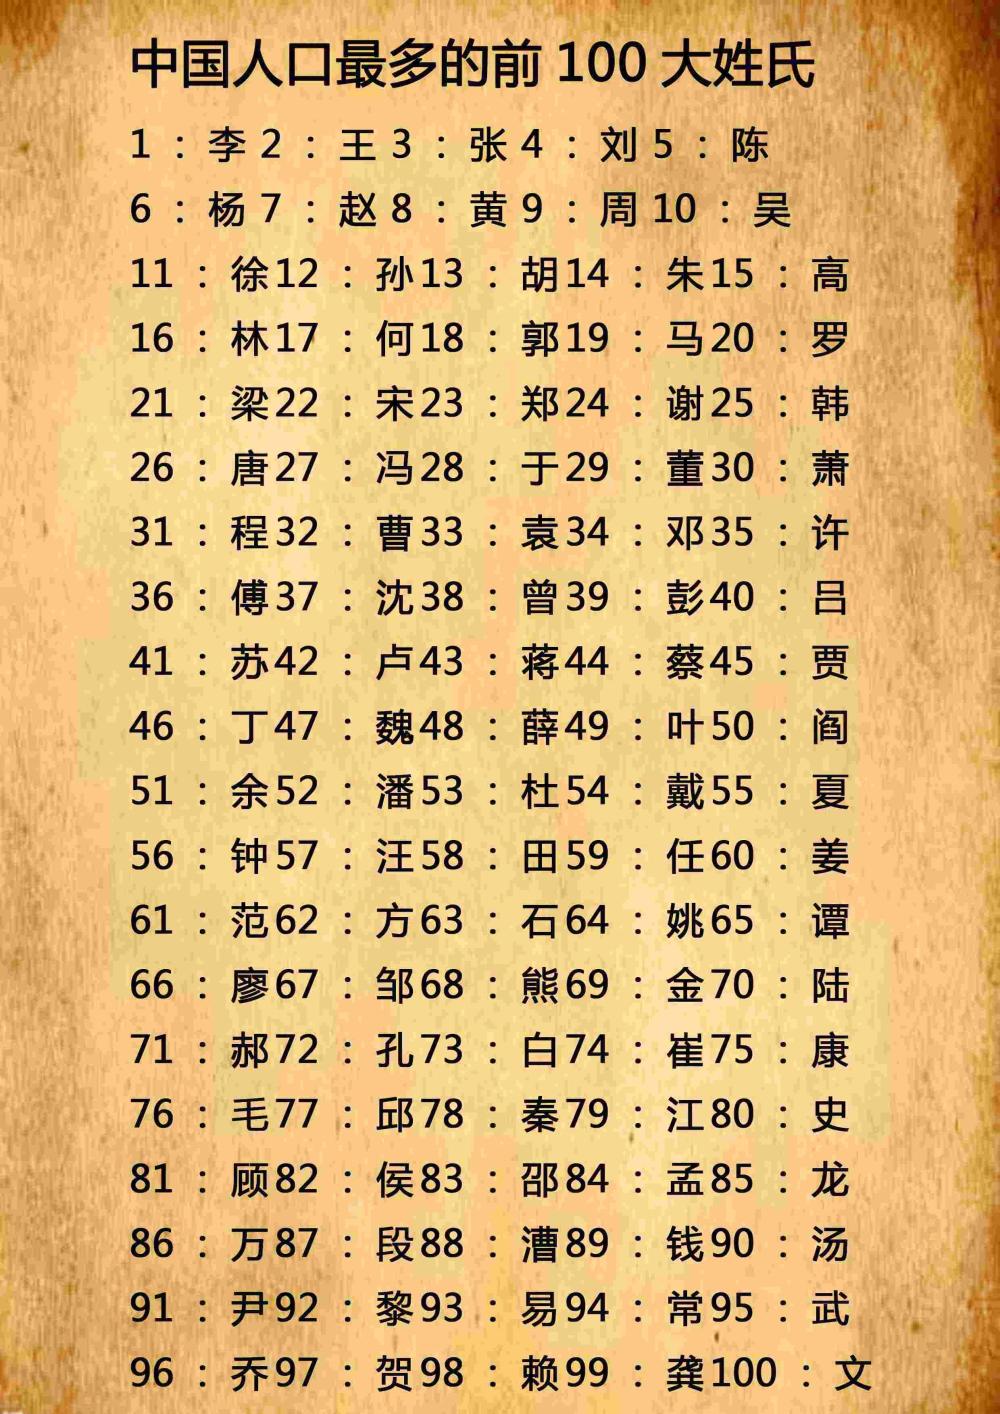 中国姓氏排名榜, 人数最多的姓氏有哪几种呢? 看一看你的在哪呢?